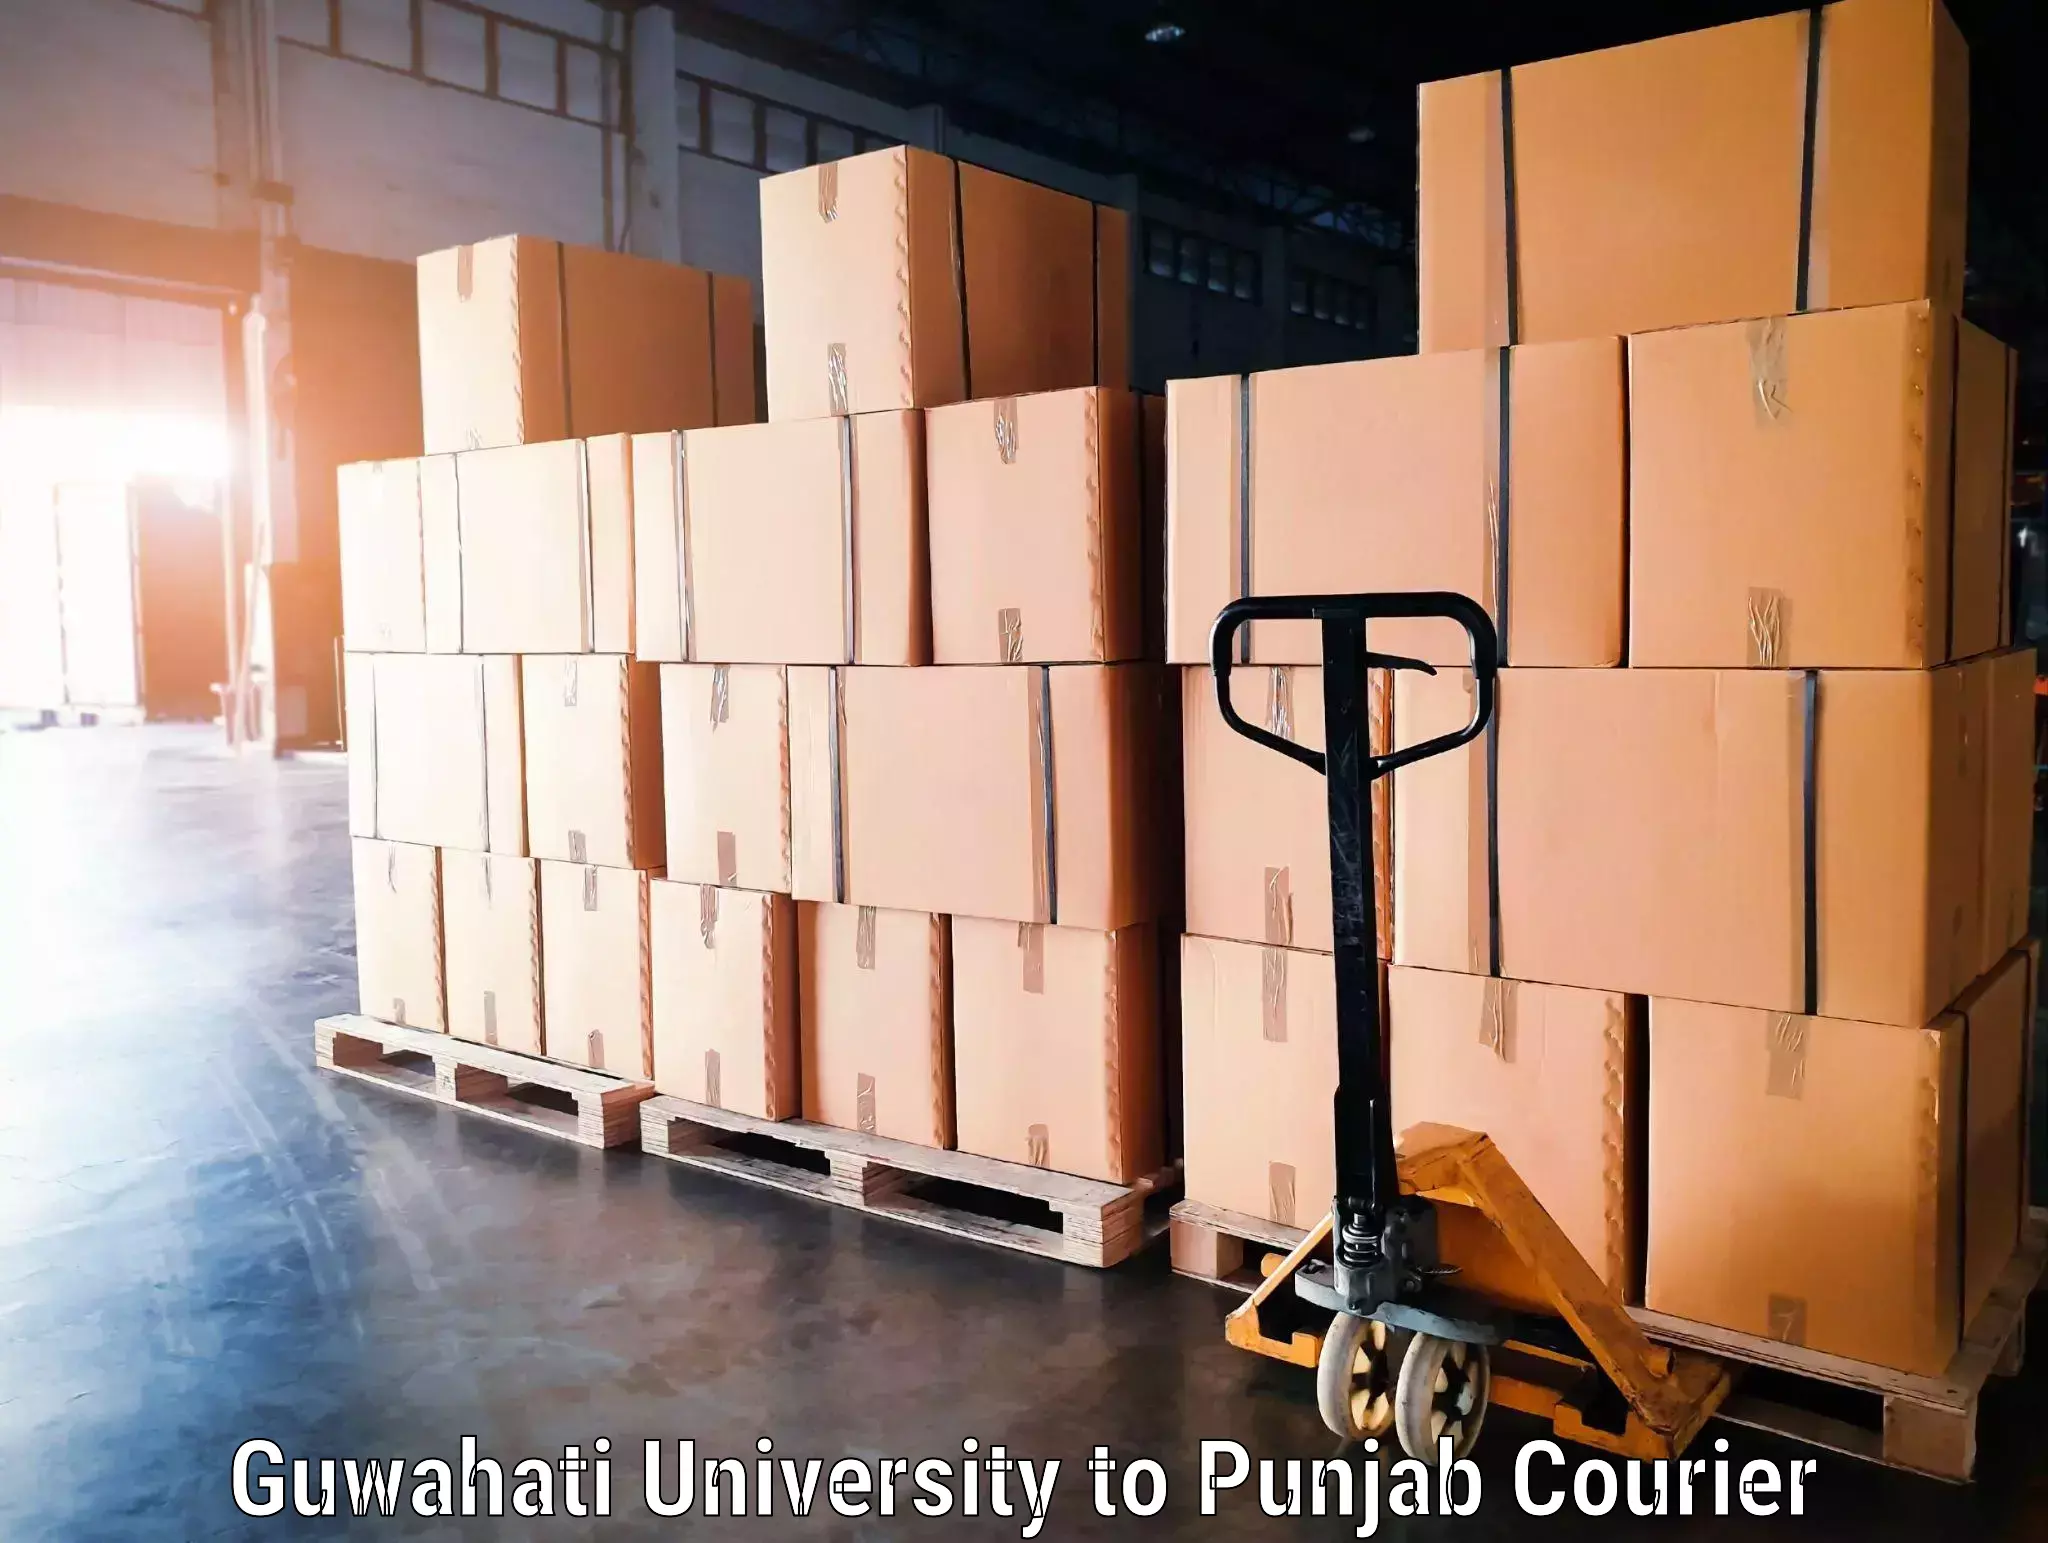 Doorstep luggage collection in Guwahati University to Punjab